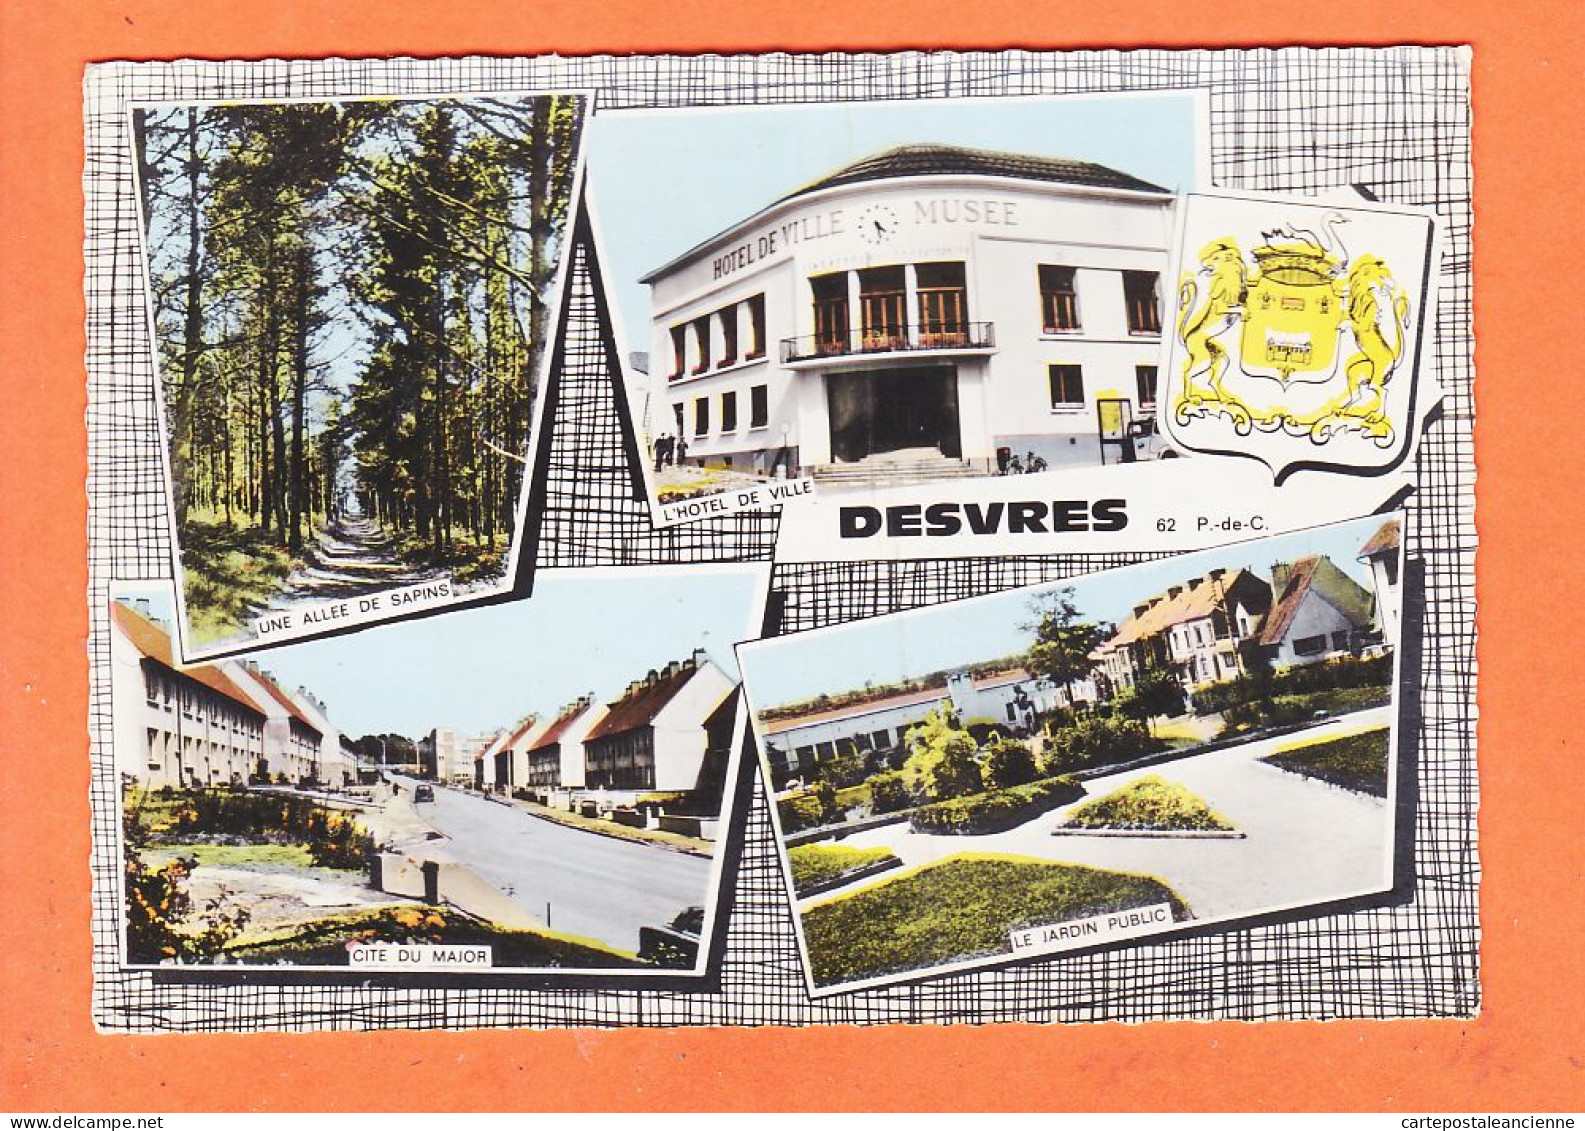 18935 / DESVRES 62-Pas Calais Cité MAJOR Hotel-Ville Allée Sapins Jardin Public1969 à MENNESSON DIEPPE-COMBIER - Desvres